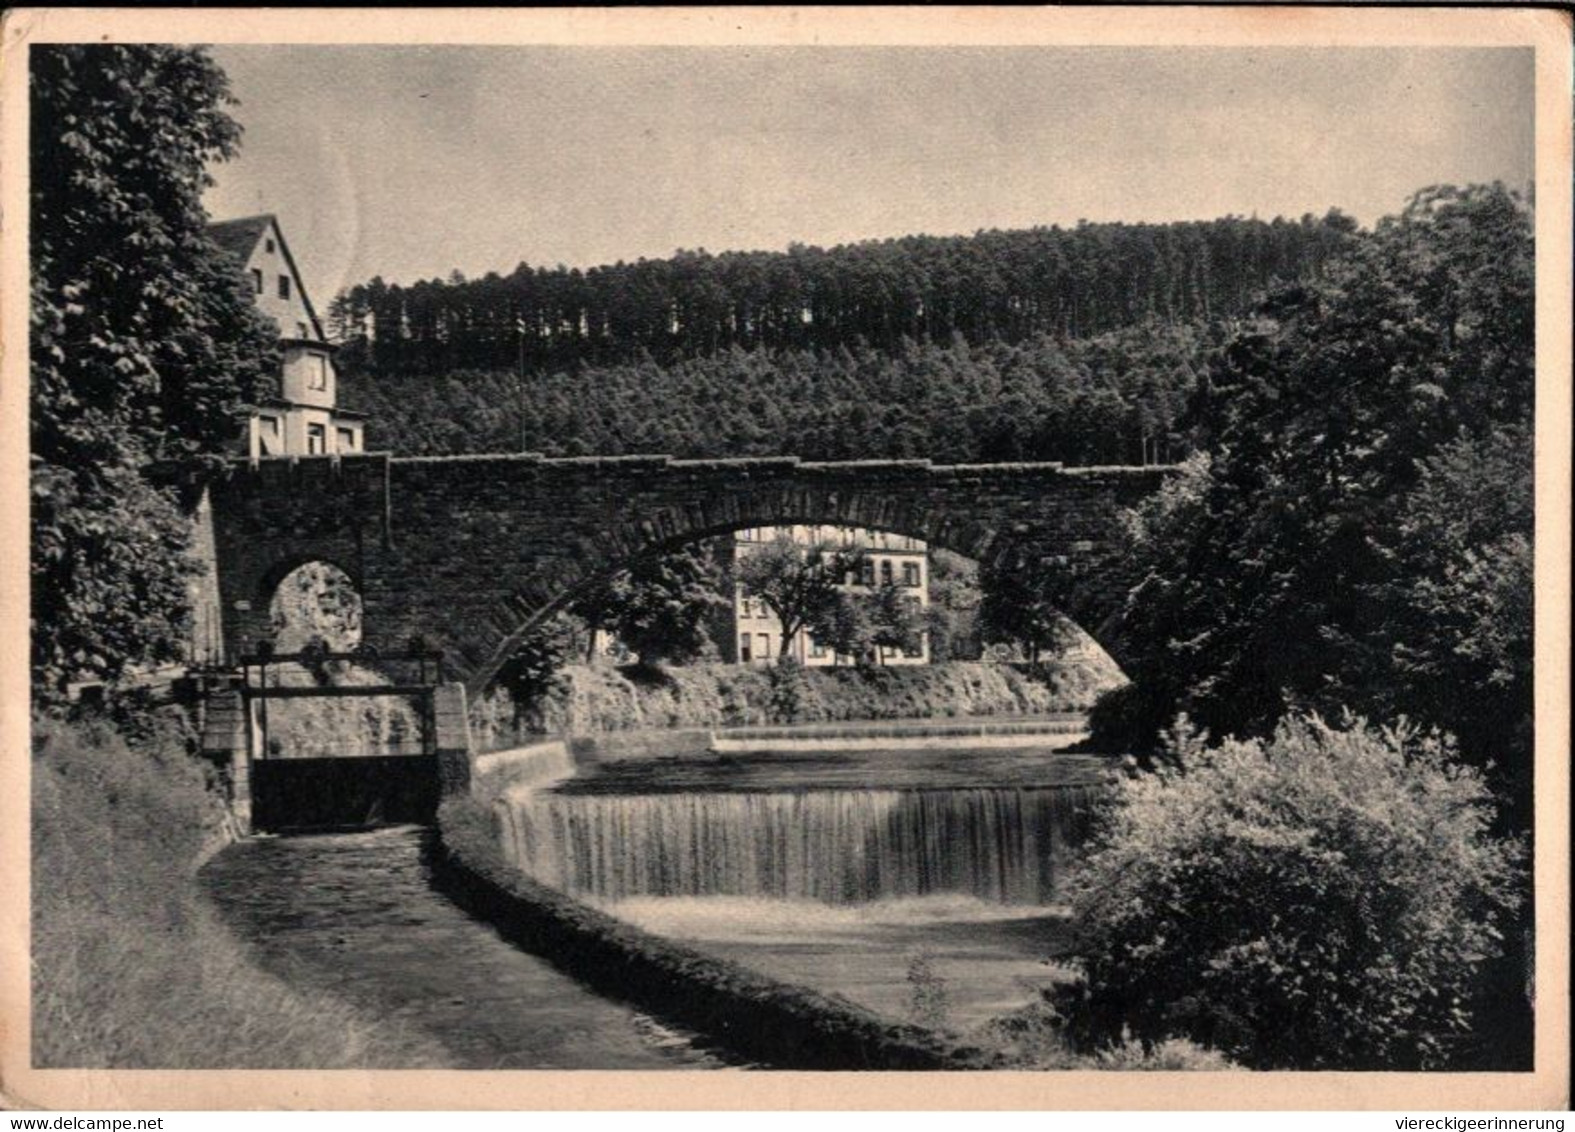 ! 1936 Alte Ansichtskarte Aus Pforzheim, Dillweissenstein, Brücke, Bridge, Nagold, Briefmarke Mit Firmenlochung, Perfin - Bruggen